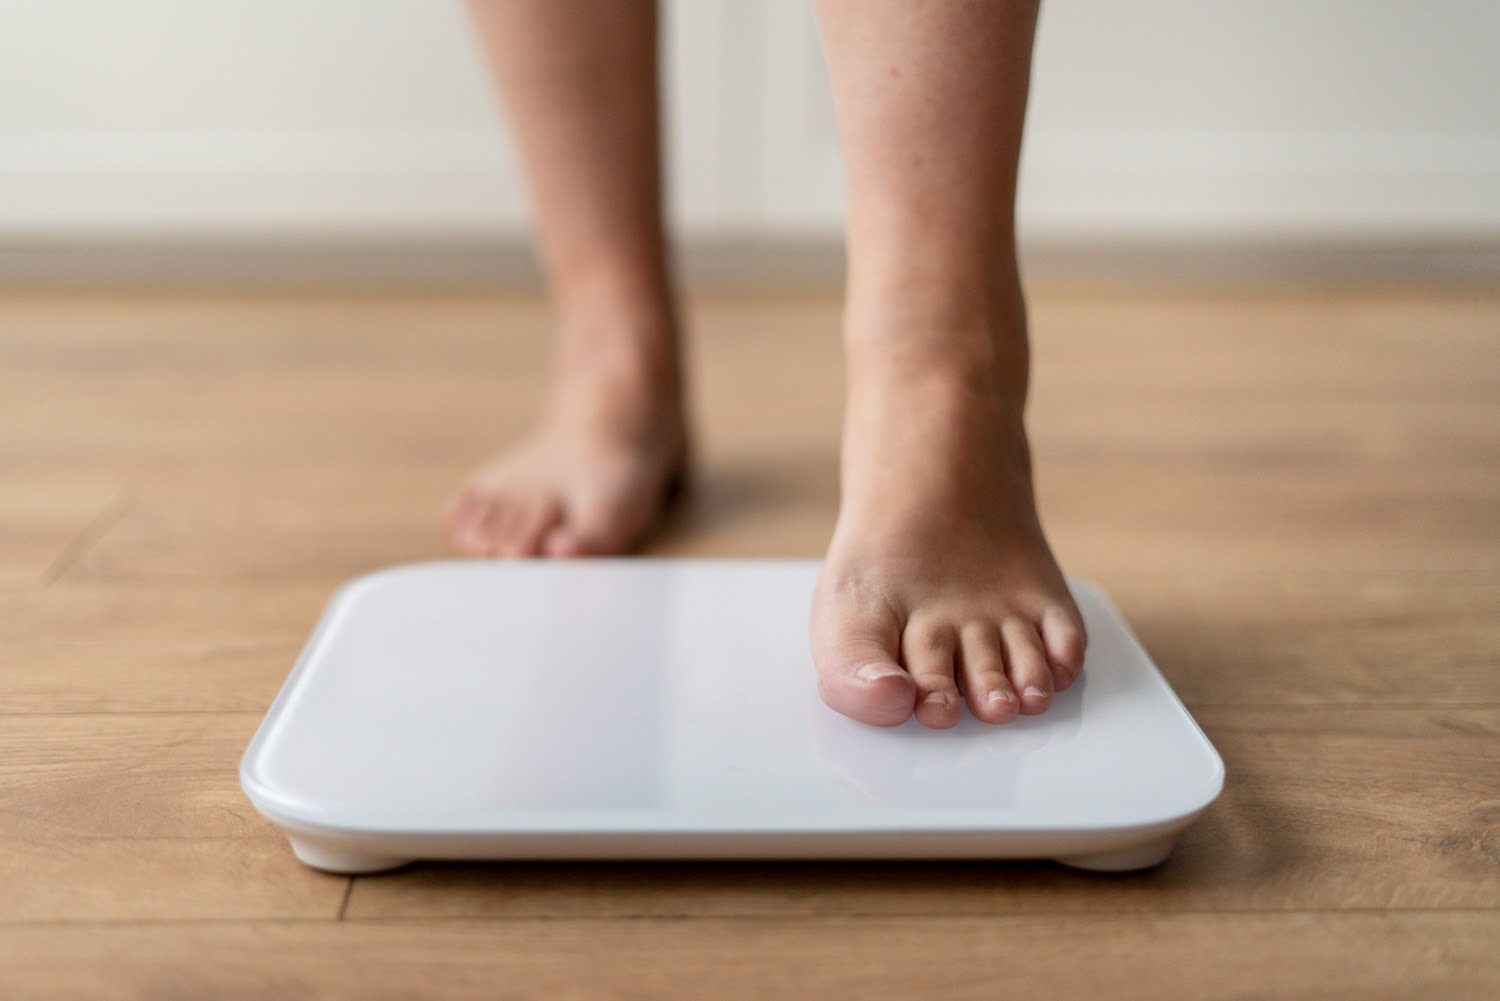 Obesidade mata mais que câncer e aids; nutricionista dá dicas de como evitar sobrepeso